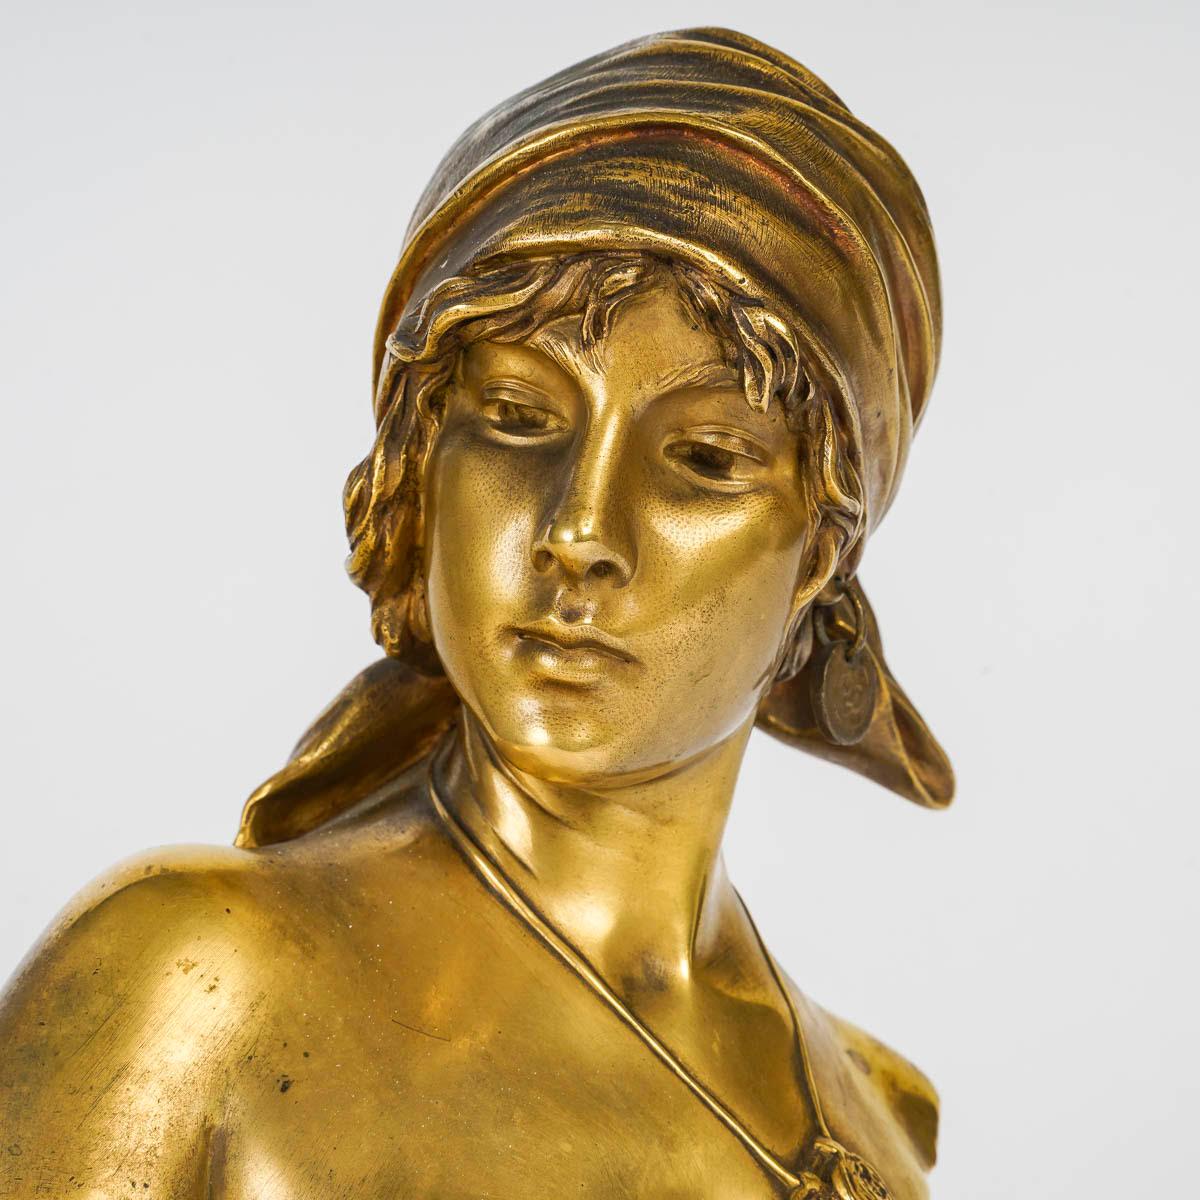 Sculpture en bronze doré d'Emmanuel Villanis, début du 20e siècle.

Sculpture d'époque Art nouveau, vers 1900 par Emmanuel Villanis, représentant un buste de jeune femme, la Bohémienne, en bronze doré.
h : 28cm, w : 17cm, d : 12cm